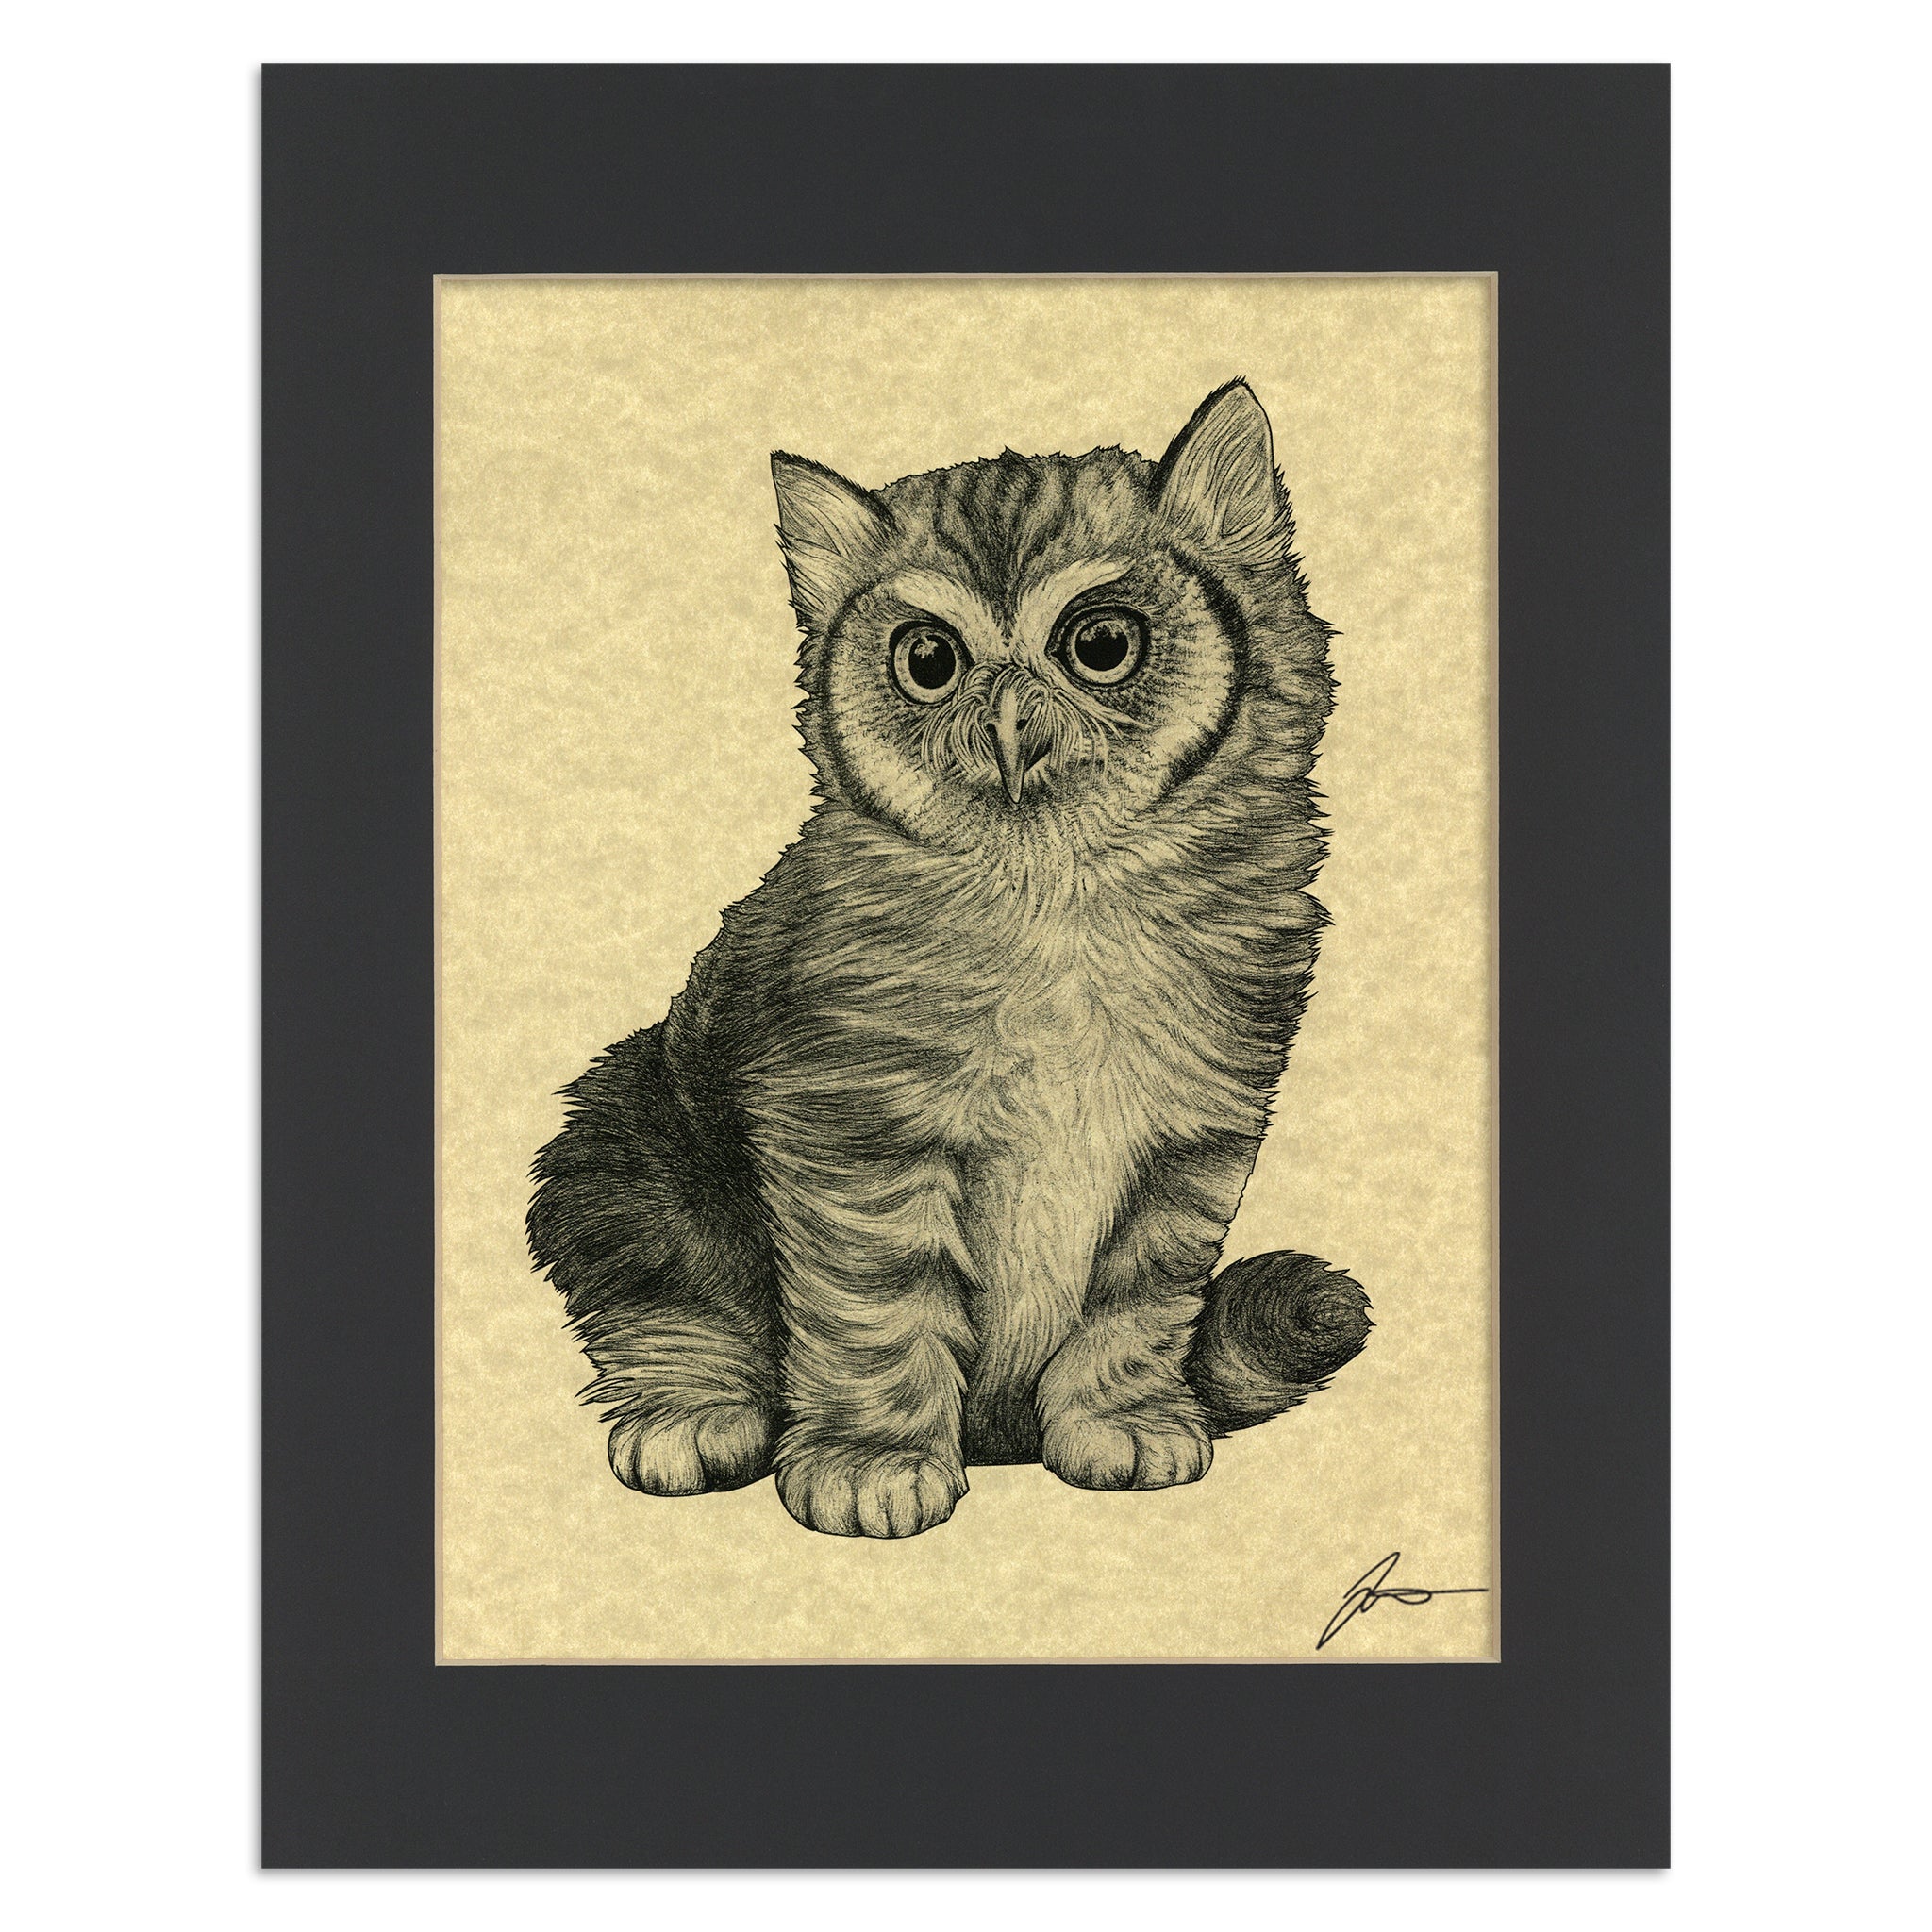 Meowl 11x14" Parchment Print